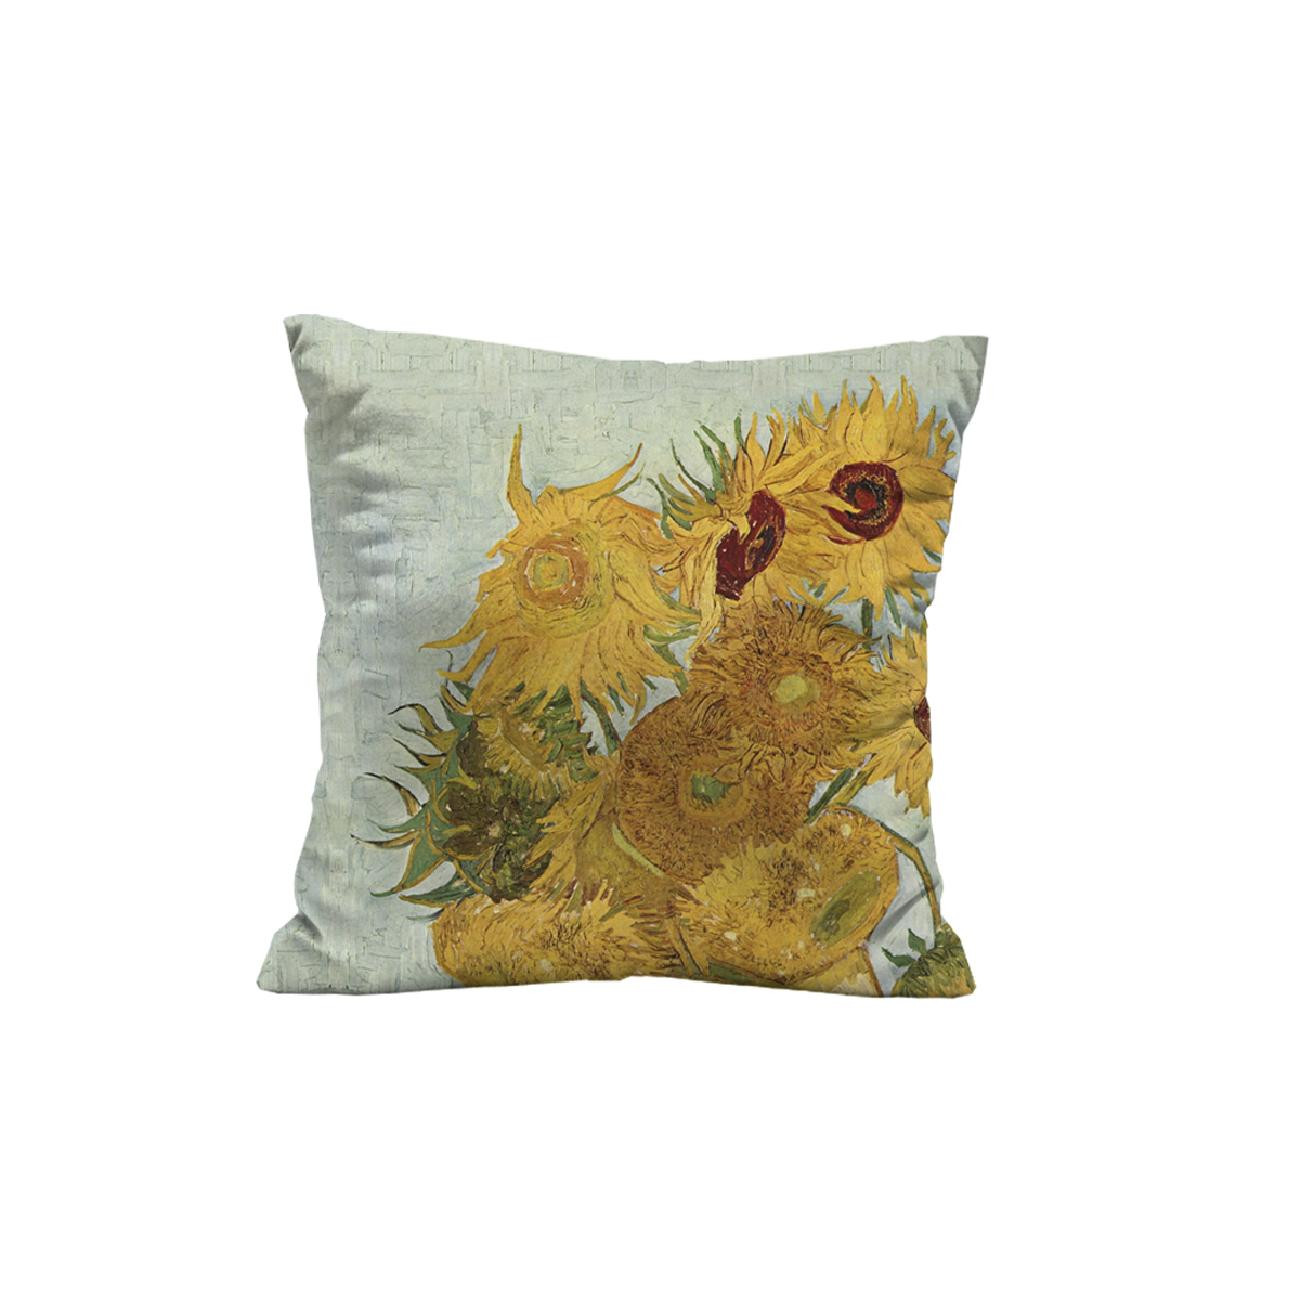 PODUSZKA 45X45 - SŁONECZNIKI (Vincent van Gogh) - welur tapicerski - zestaw do uszycia